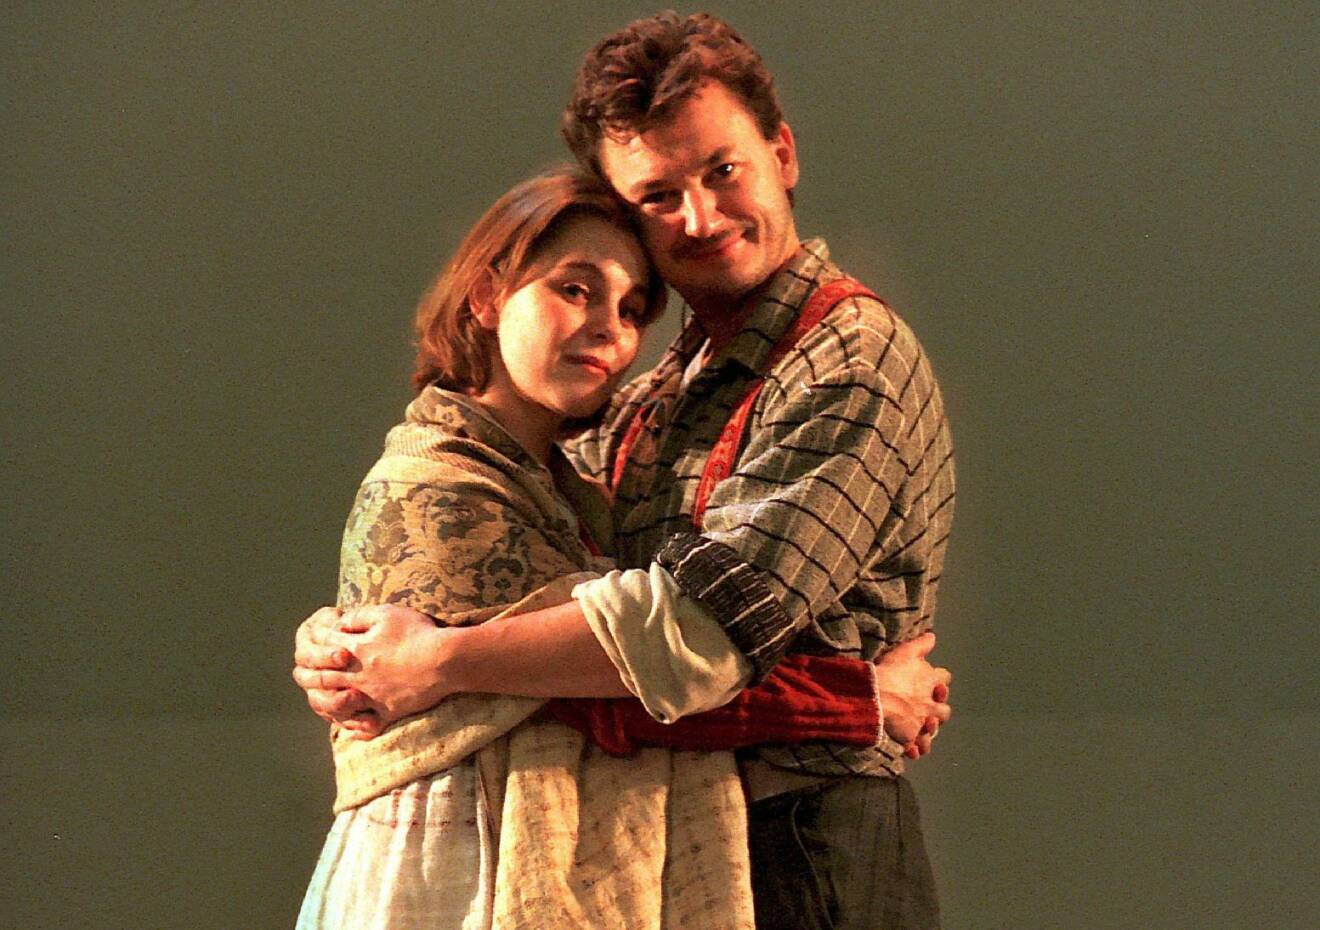 Helen Sjöholm som Kristina och Anders Ekborg som Karl Oskar i musikalen Kristina från Duvemåla. De kramas och tittar in i kameran.